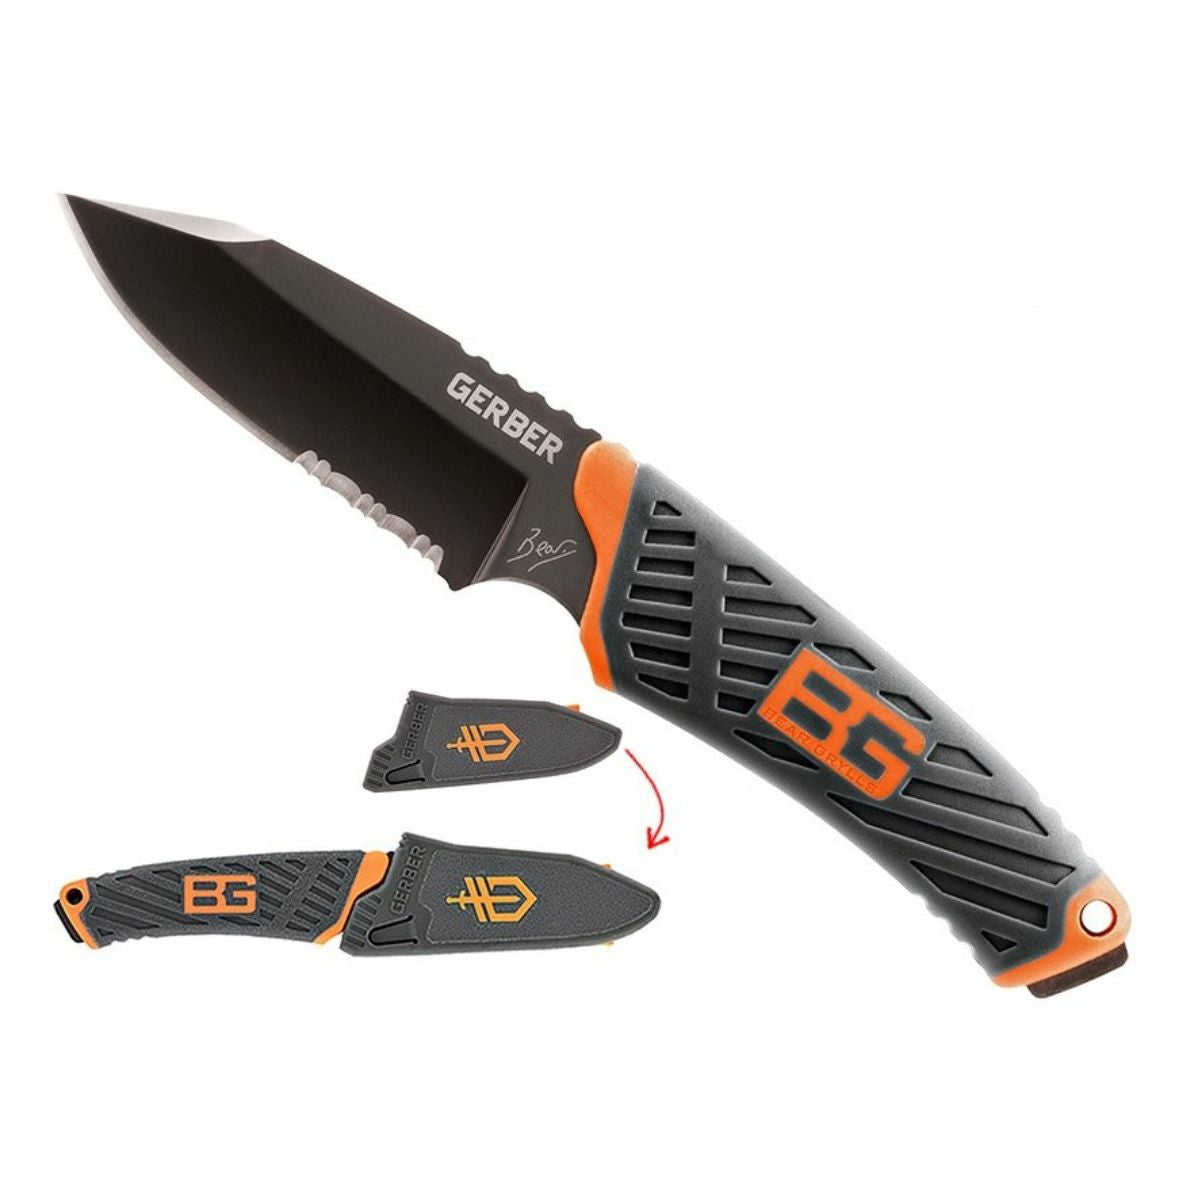 Gerber Gear Bear Grylls Compact Fixed Blade Survival Knife